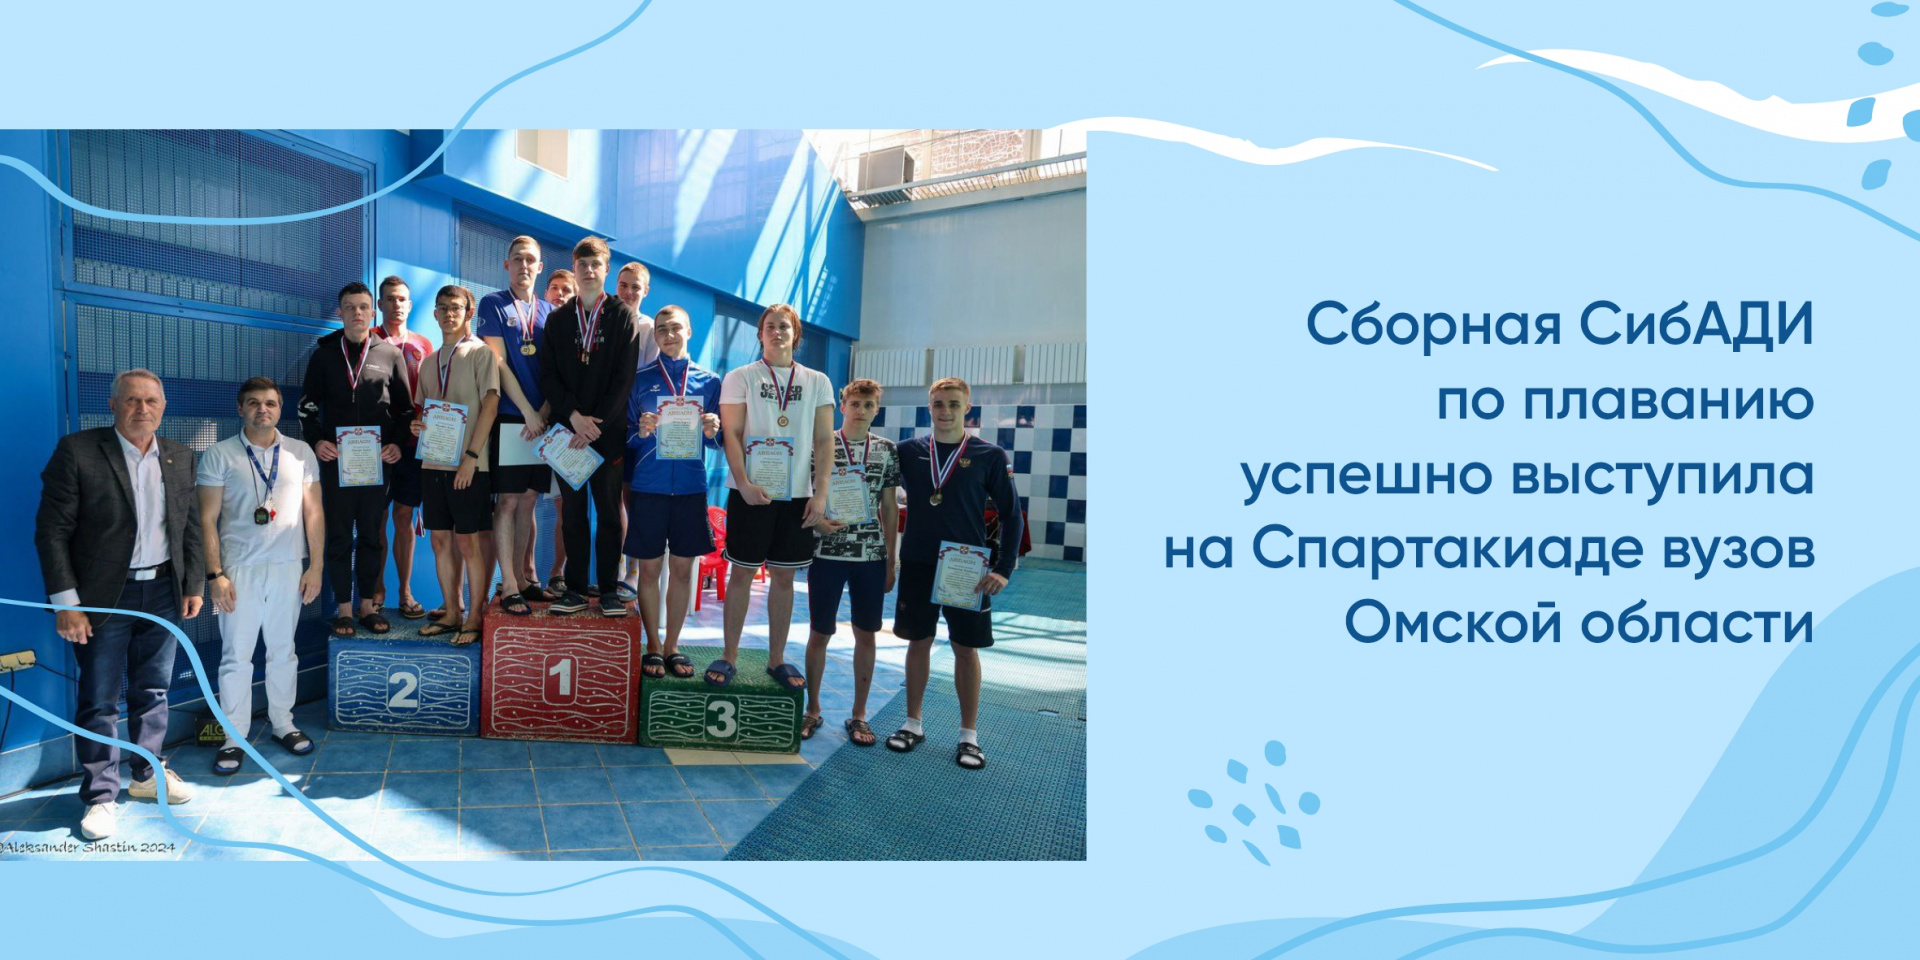 Сборная СибАДИ по плаванию успешно выступила на Спартакиаде вузов Омской области